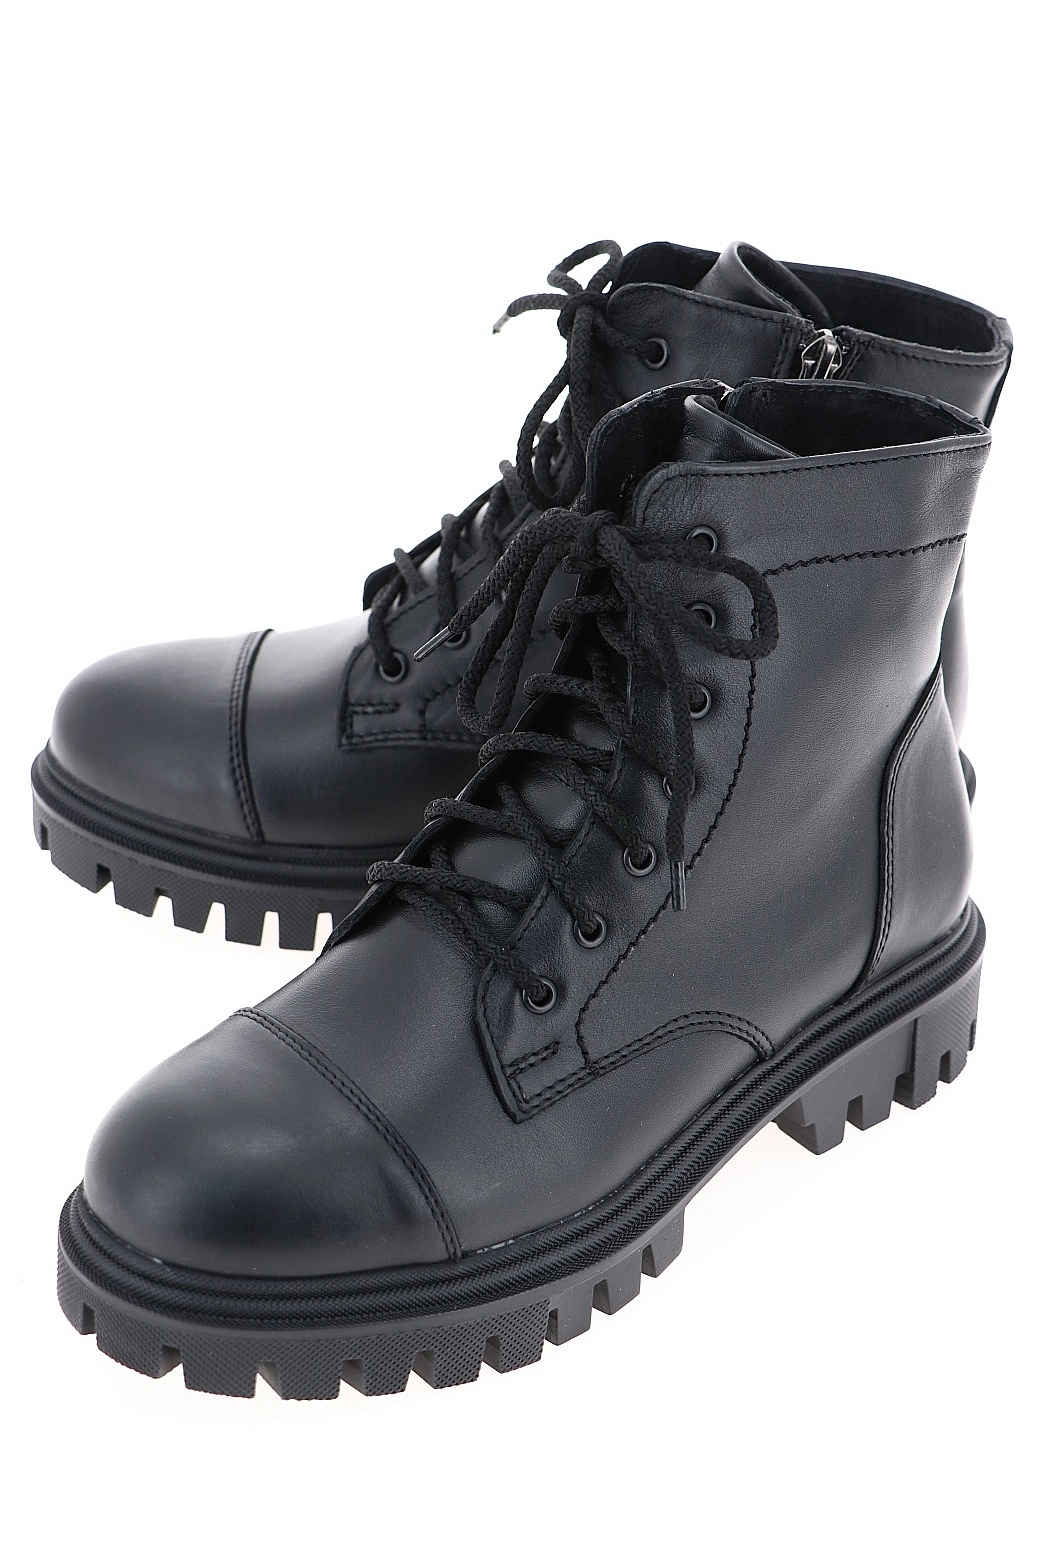 Ботинки Benetti черные RZ16_60-3A-00-00E-F_BLACK купить в Екатеринбурге за4650 руб